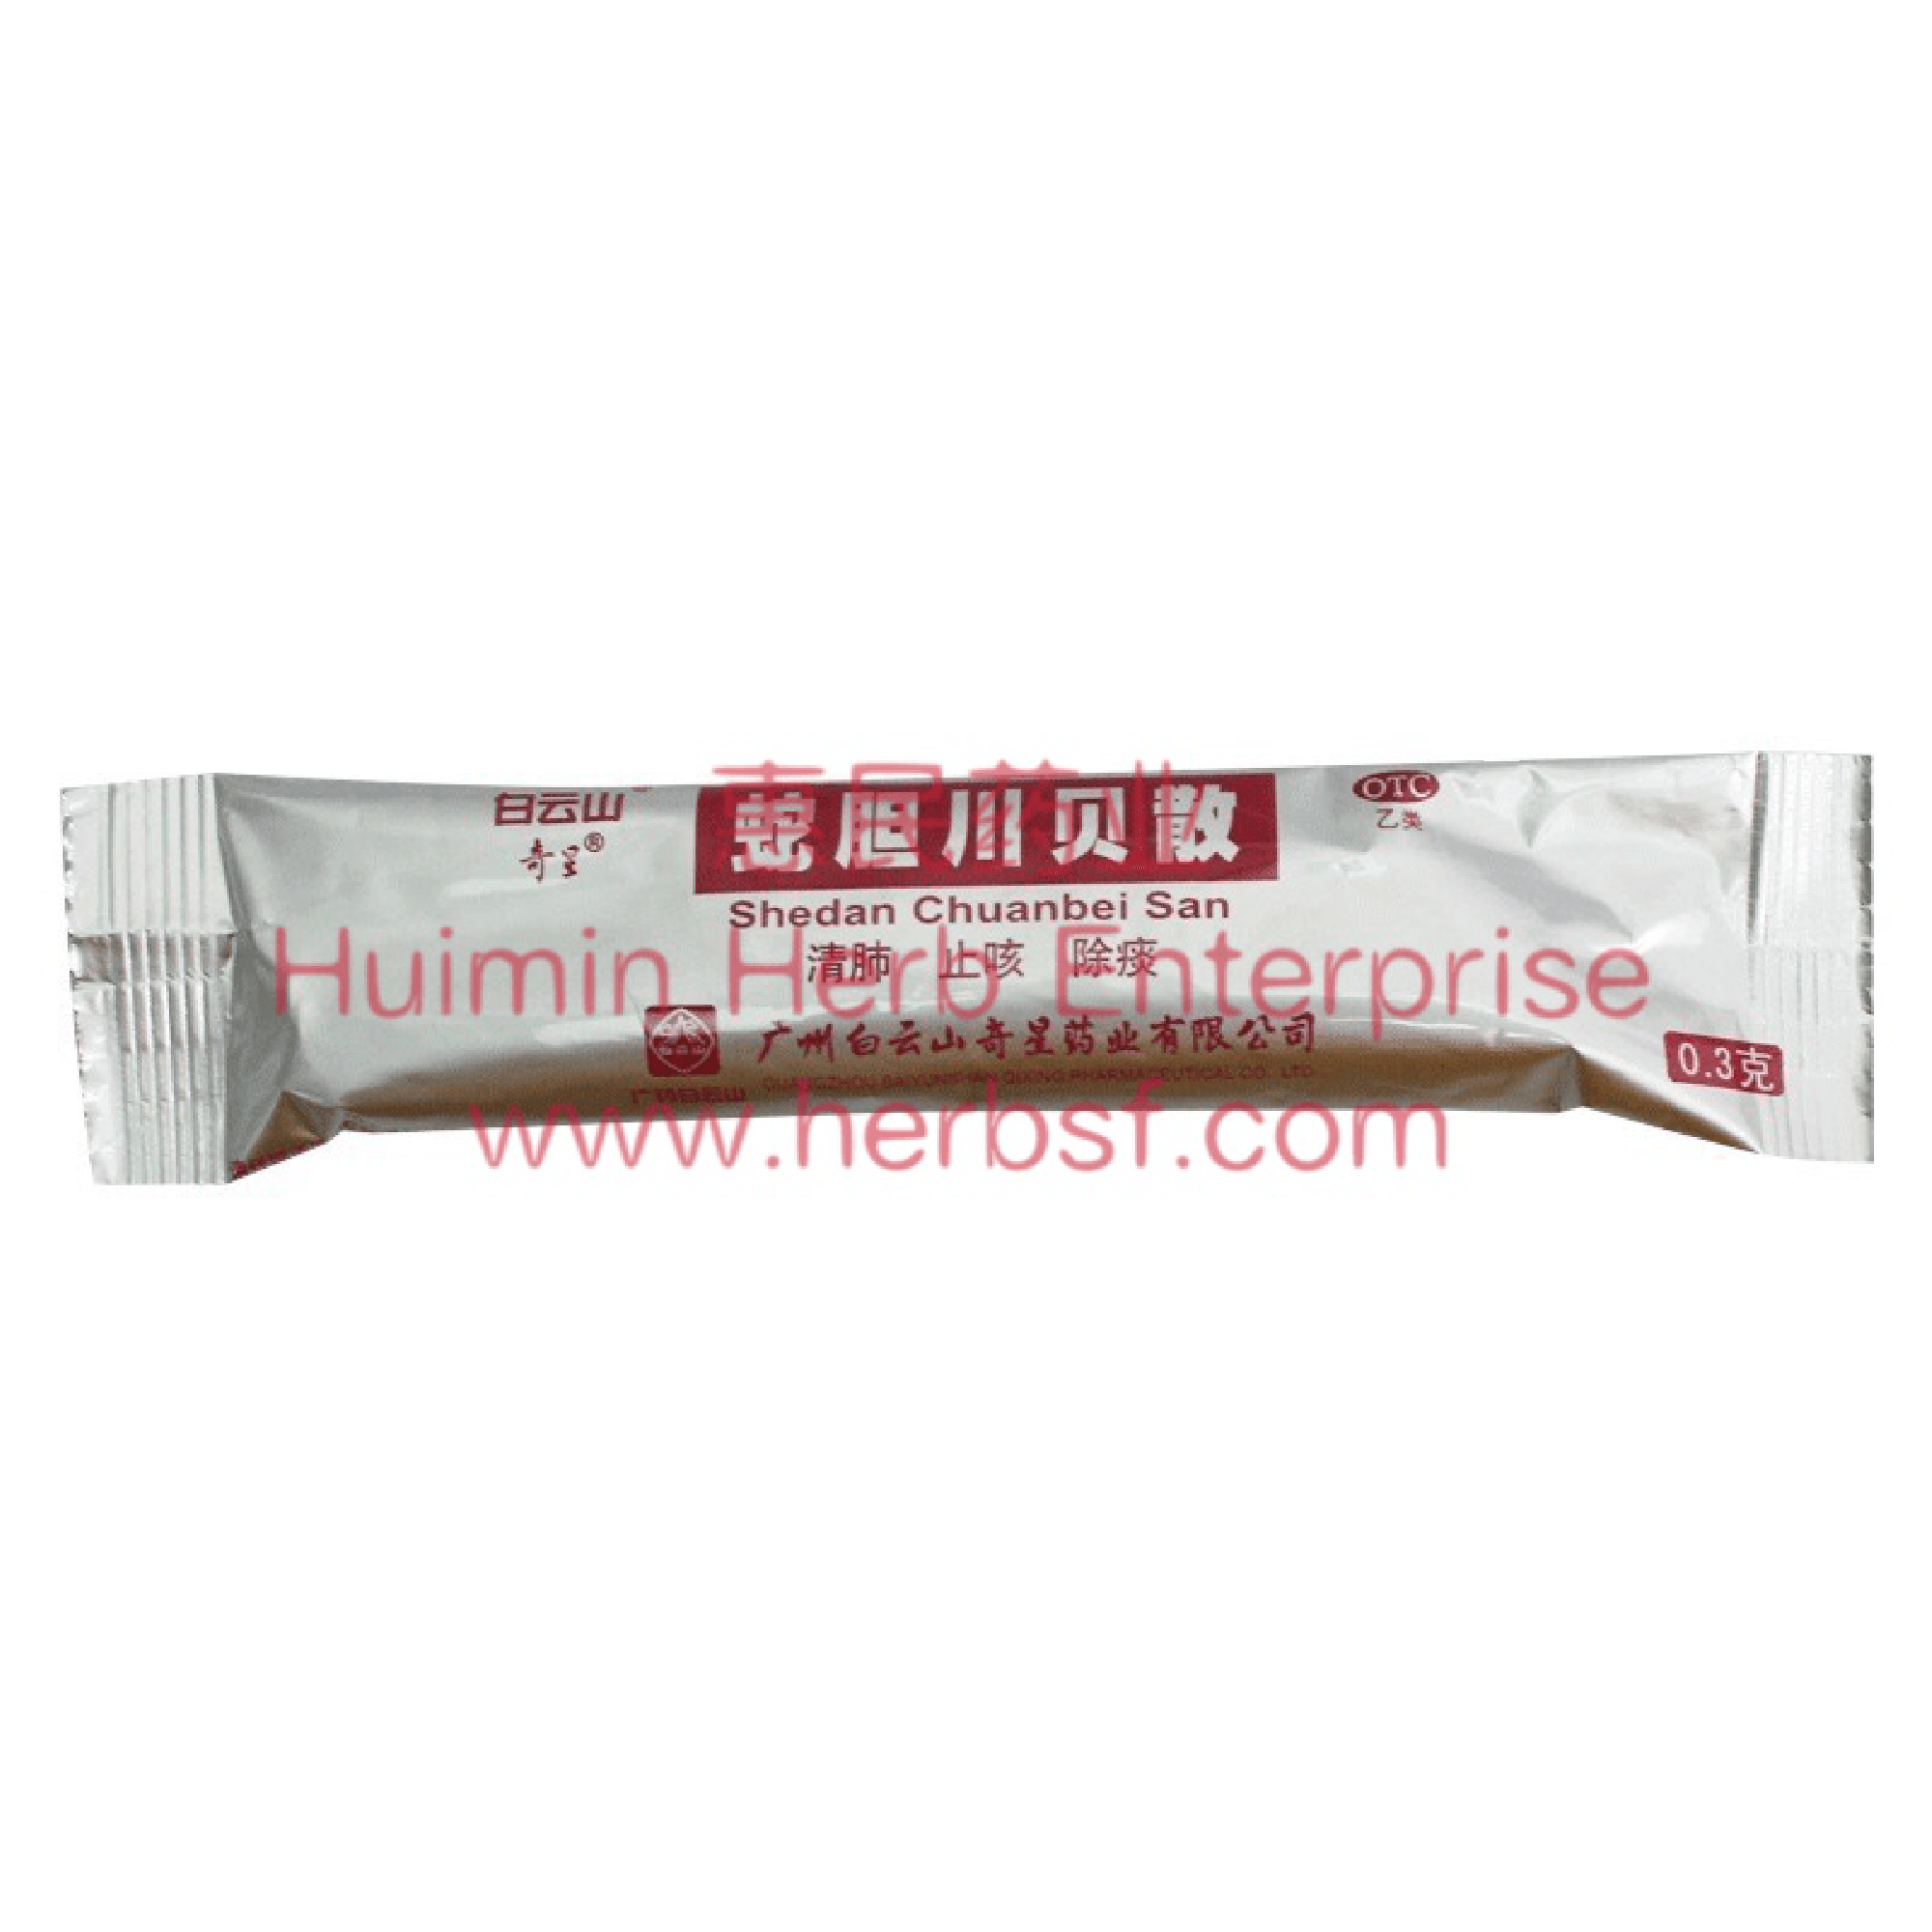 Tendrilleaf Fritillary Powder - Huimin Herb Online, LLC